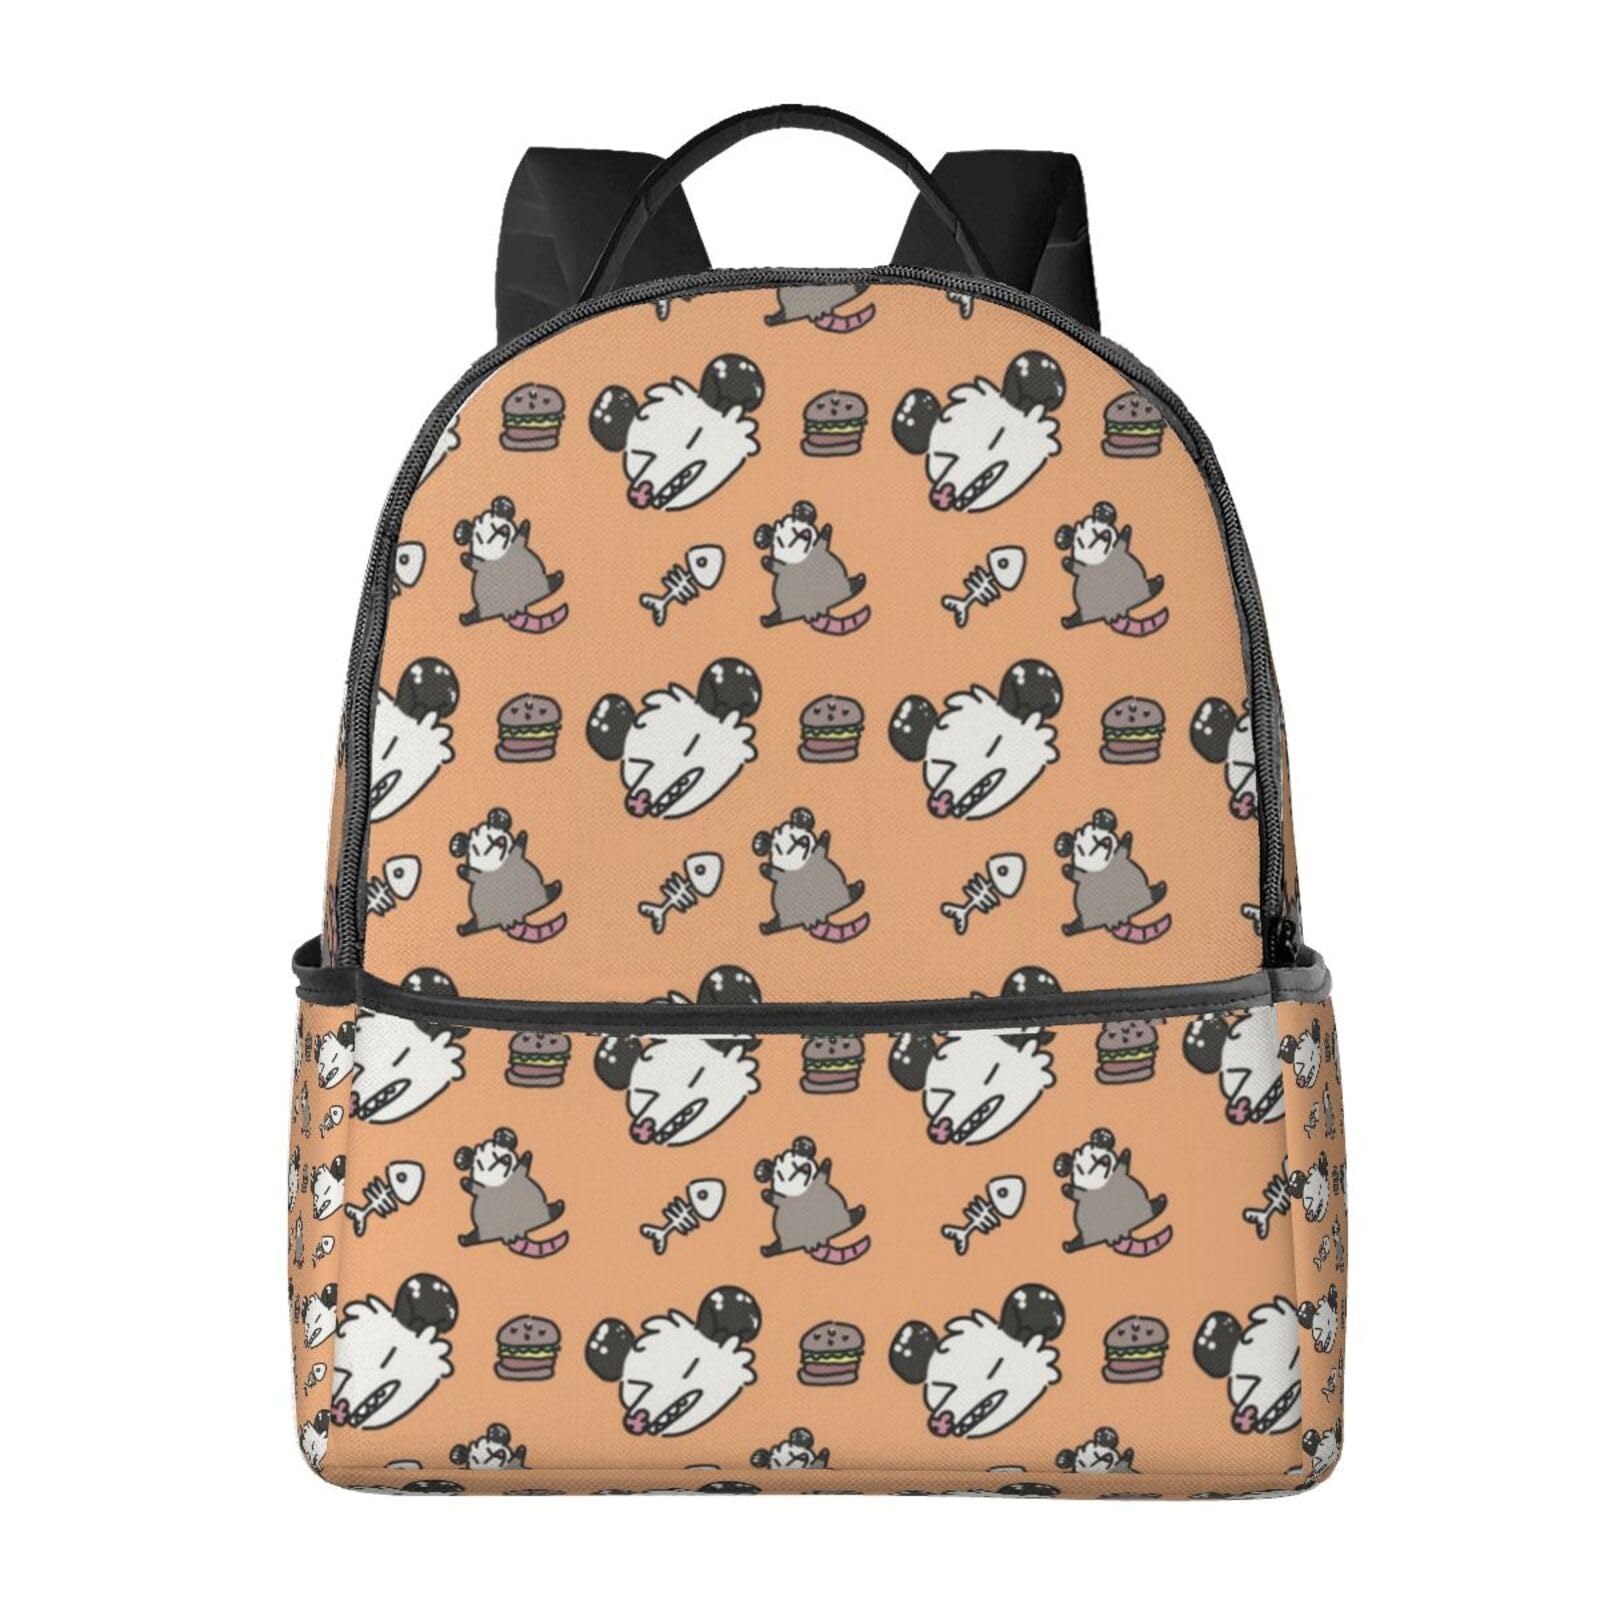 送料無料EVANEM Laptop Backpack Lightweight Travel Backpack Shoulders Bag Opossum Pattern Printed For Travel Men Women並